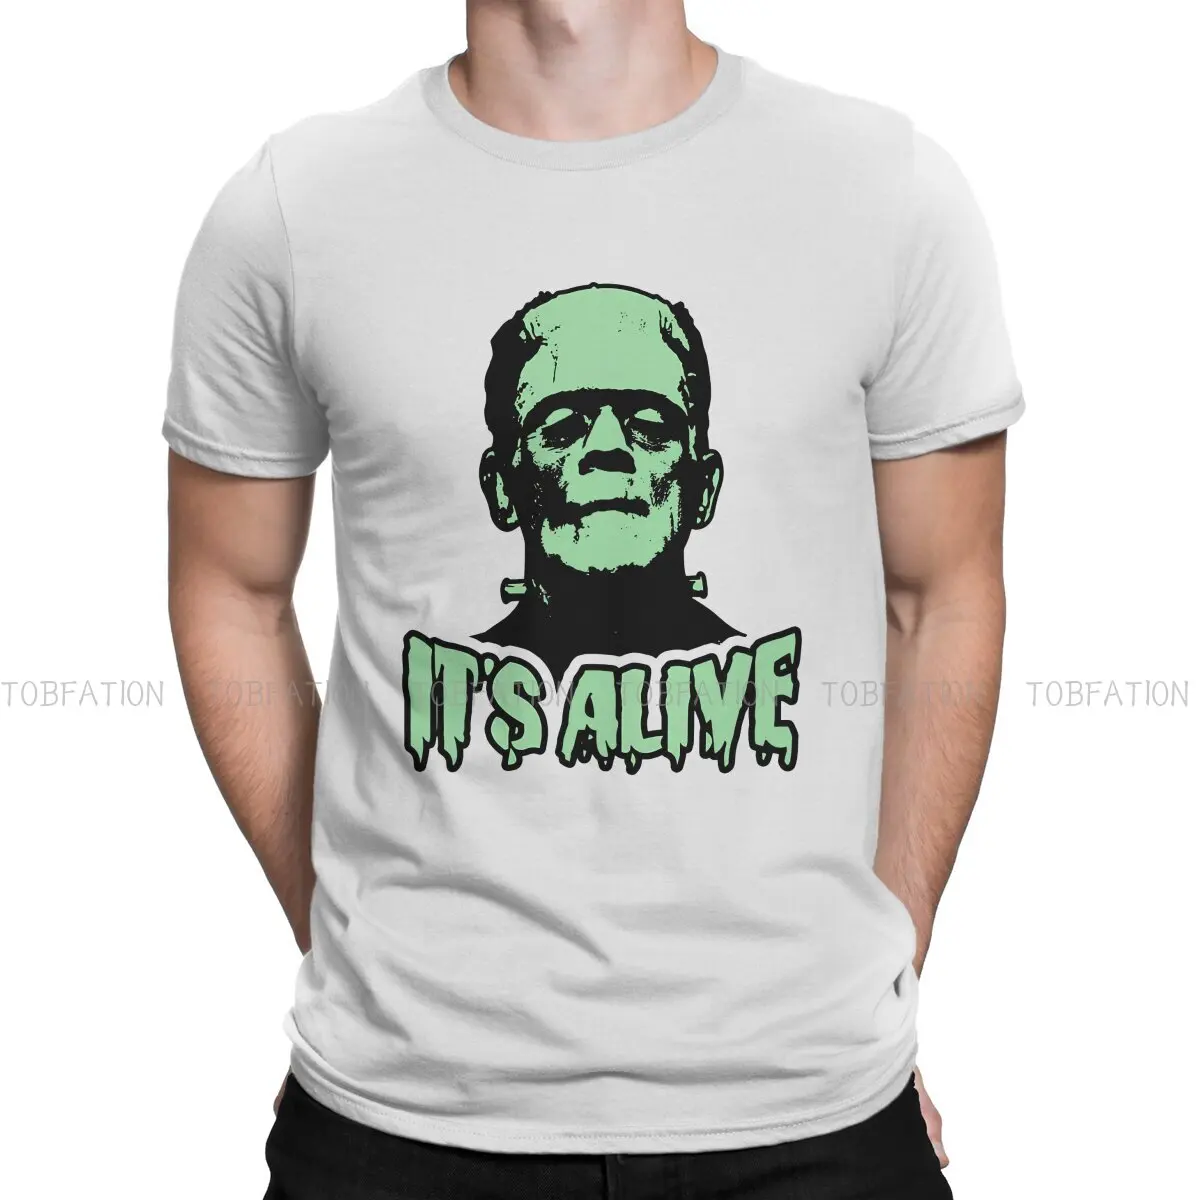 Frankenstein TShirt për Burrat Humor Humor të Lirë Sweatshirts T Shirt me Cilësi të Lartë Dizajn të Ri të Lirshme . ' - ' . 0